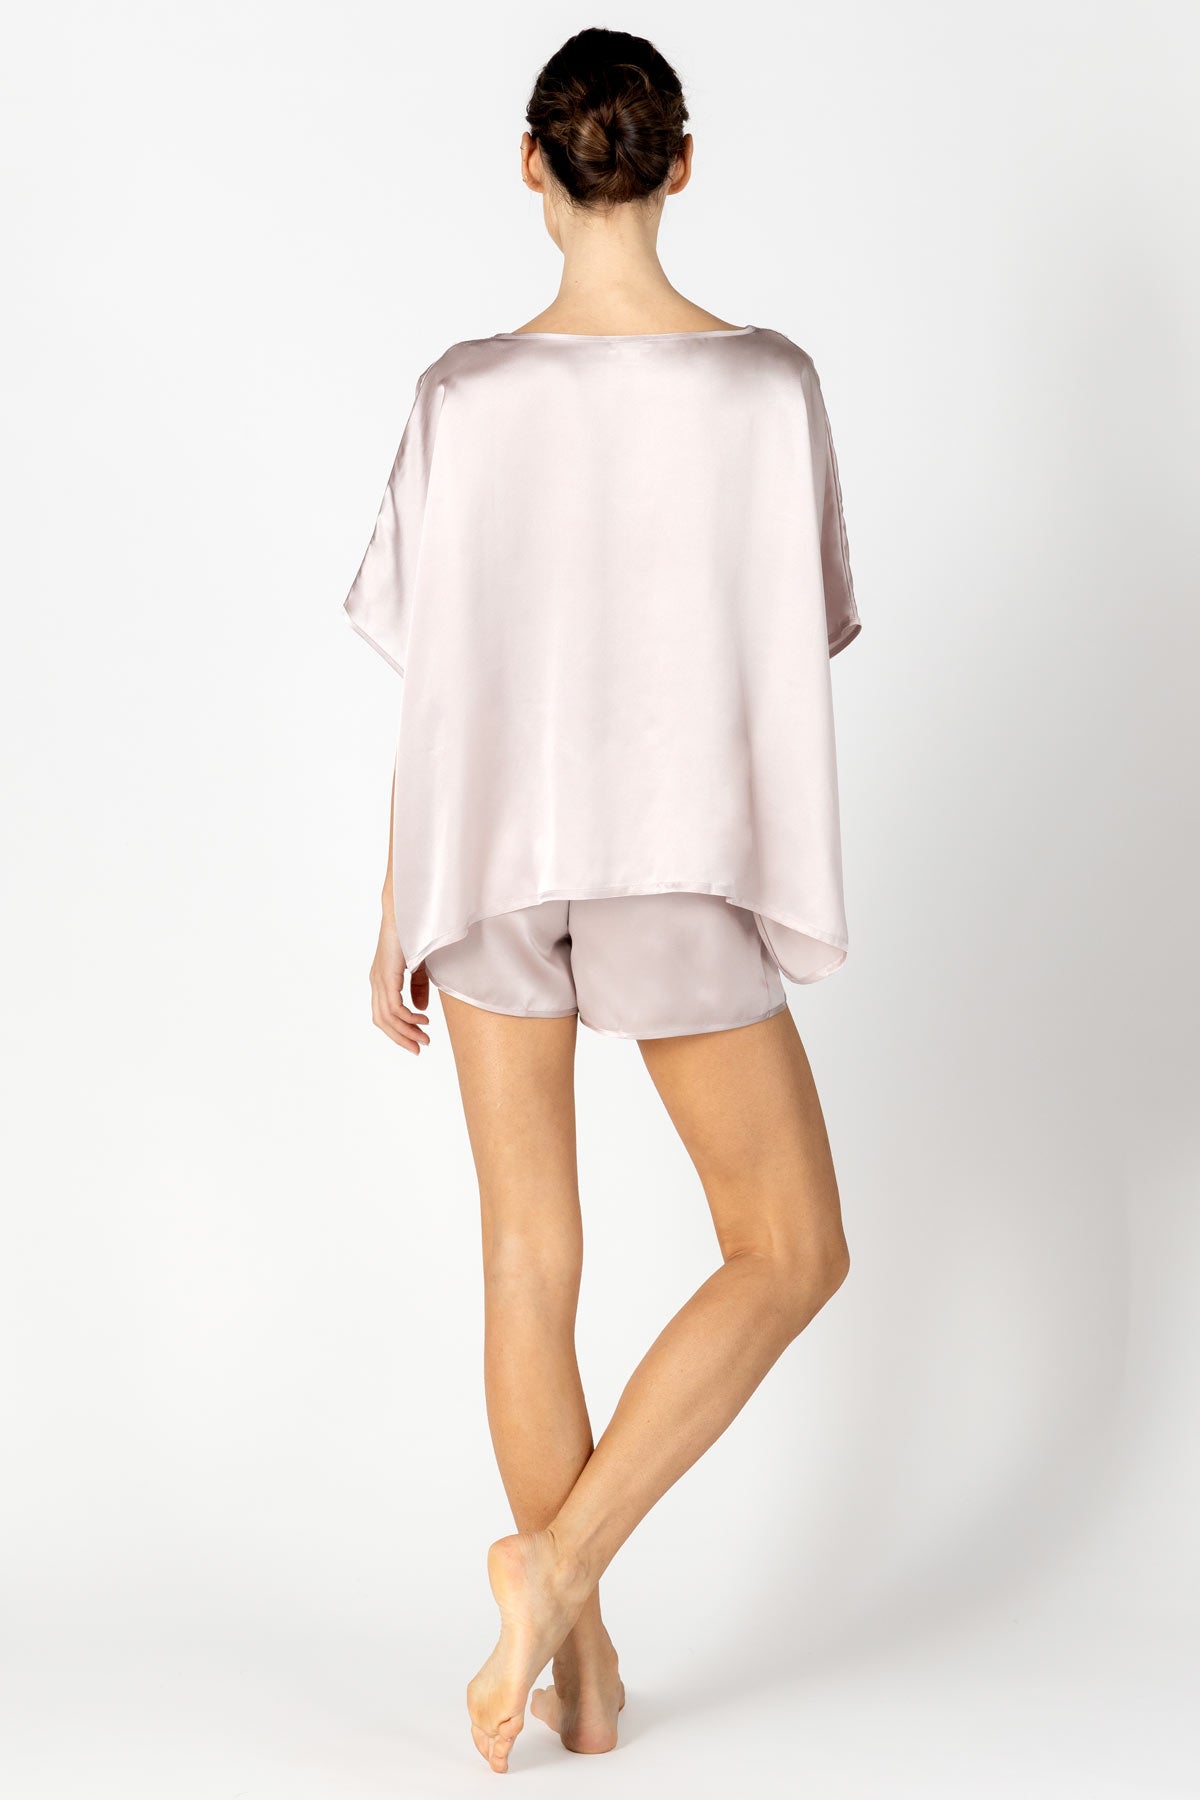 Agatha Nostalgia Fly-Away Top and Boxer Silk Set Pajama Set NK iMODE Cashmere Pink X-Small